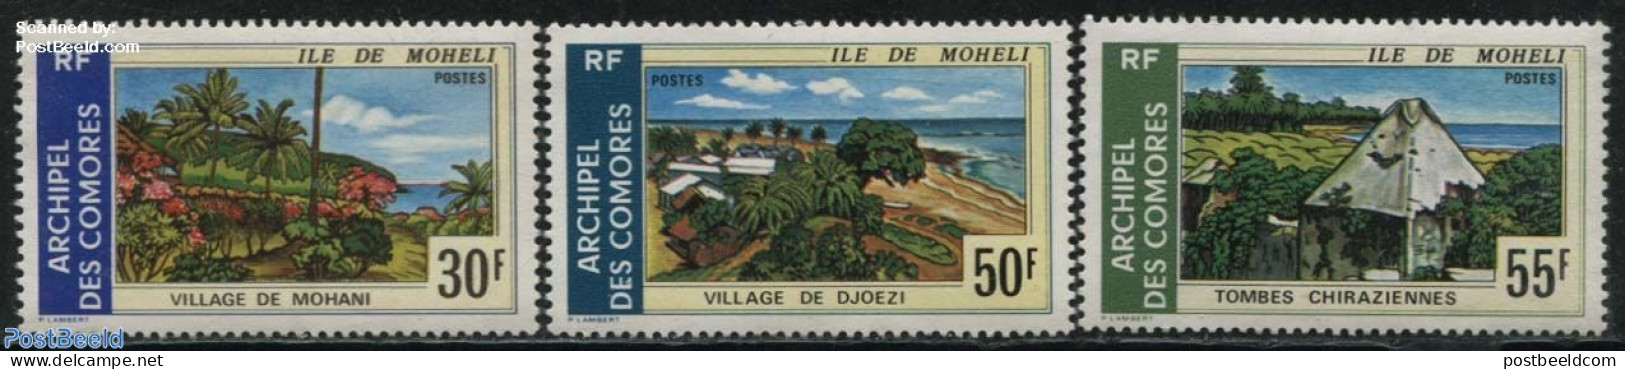 Comoros 1975 Moheli Views 3v, Mint NH, Various - Tourism - Comores (1975-...)